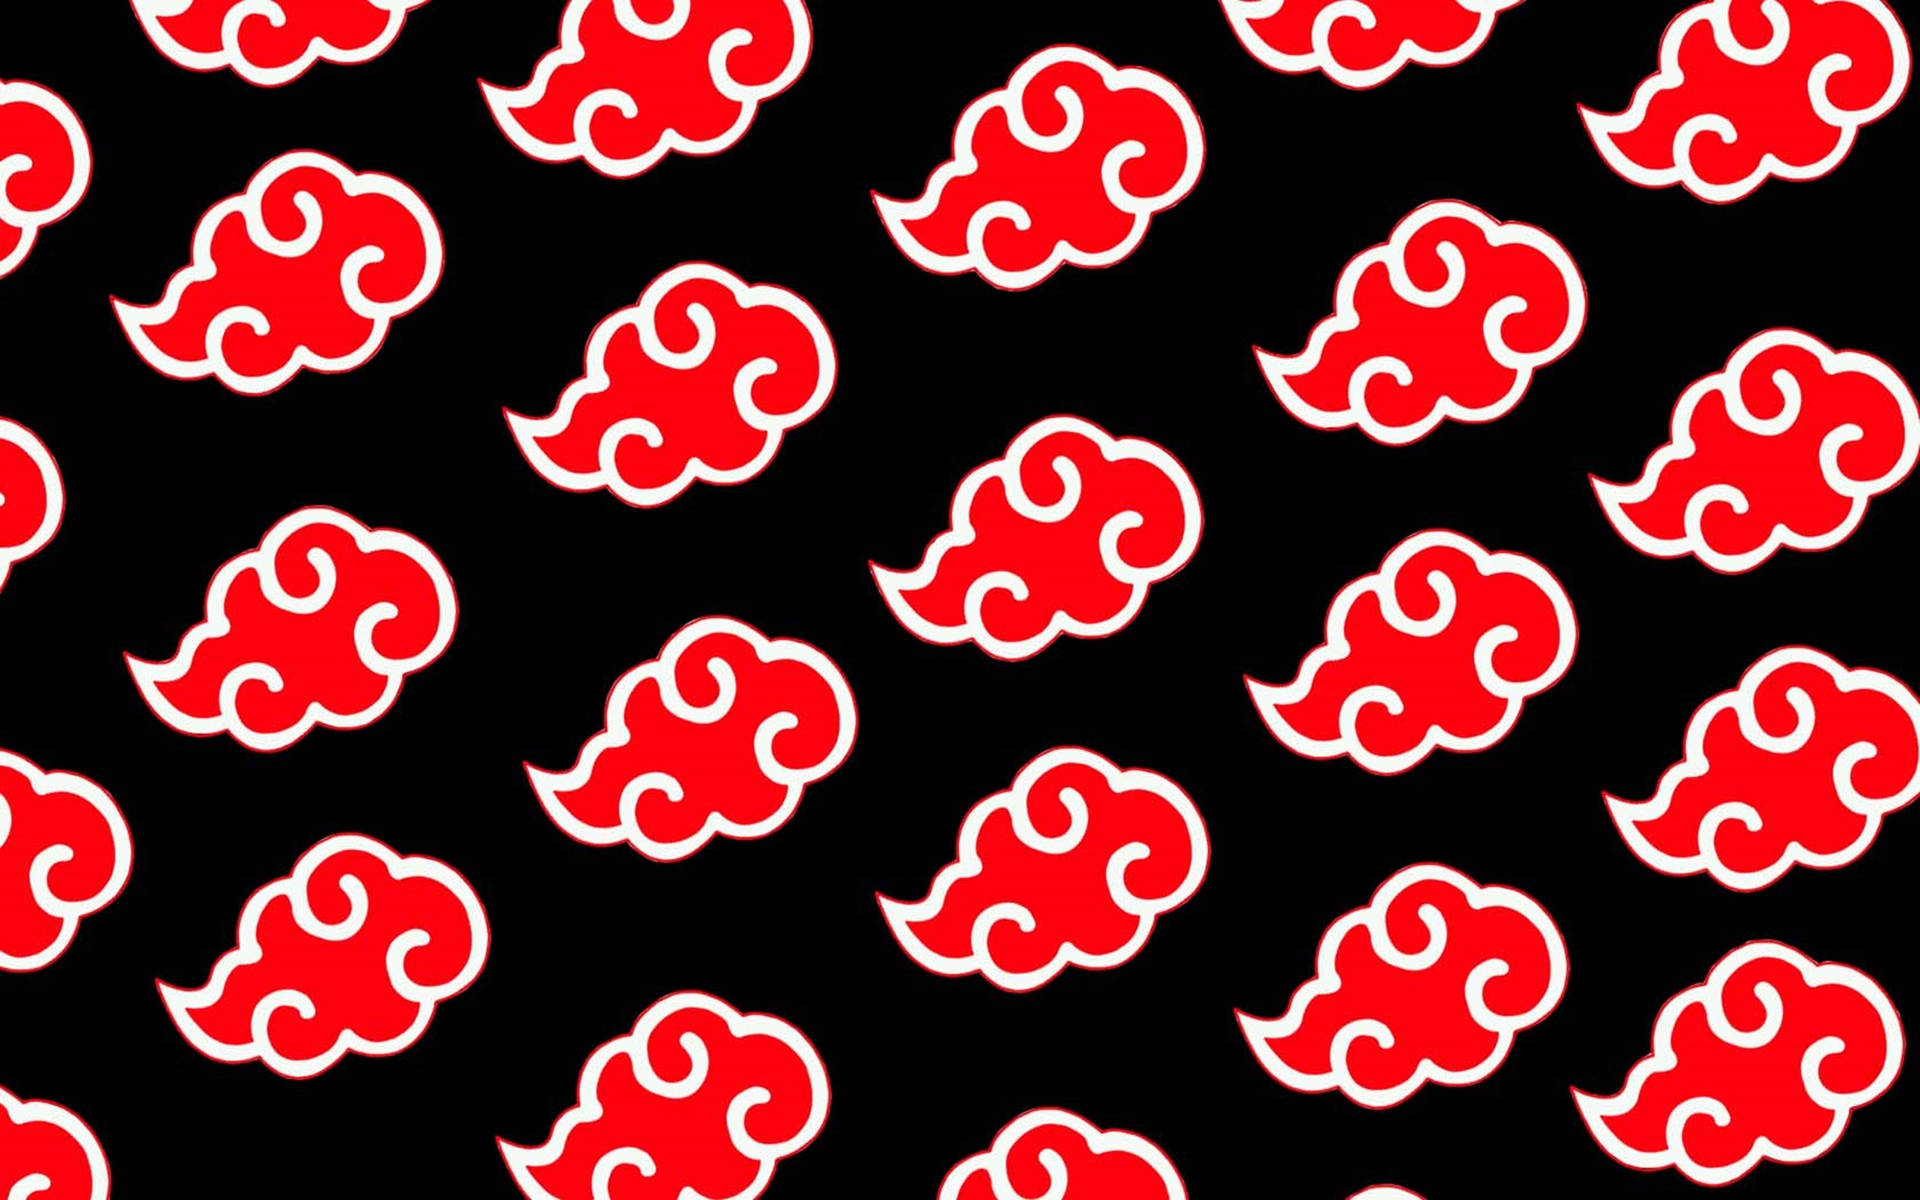 Akatsuki Logo Amegakure Red Clouds